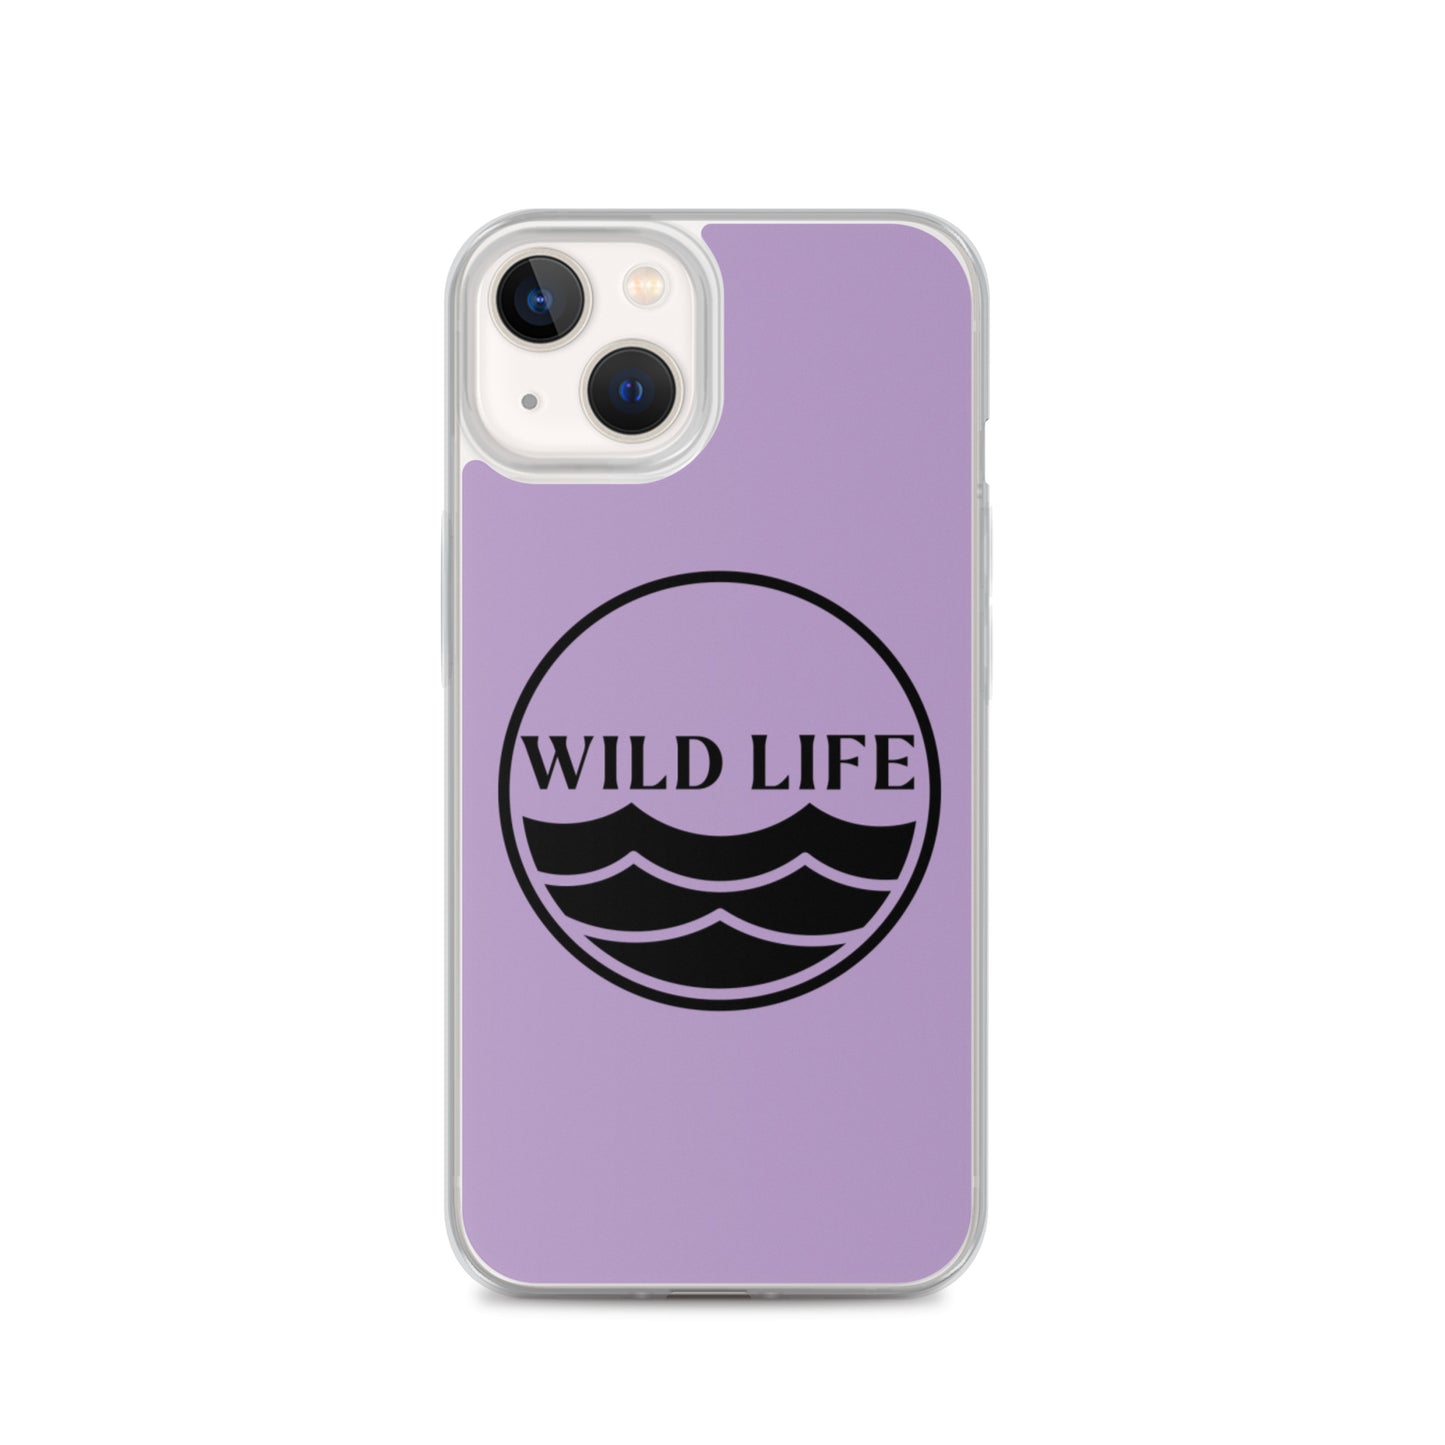 WILD LIFE iPhone Case - Lavender